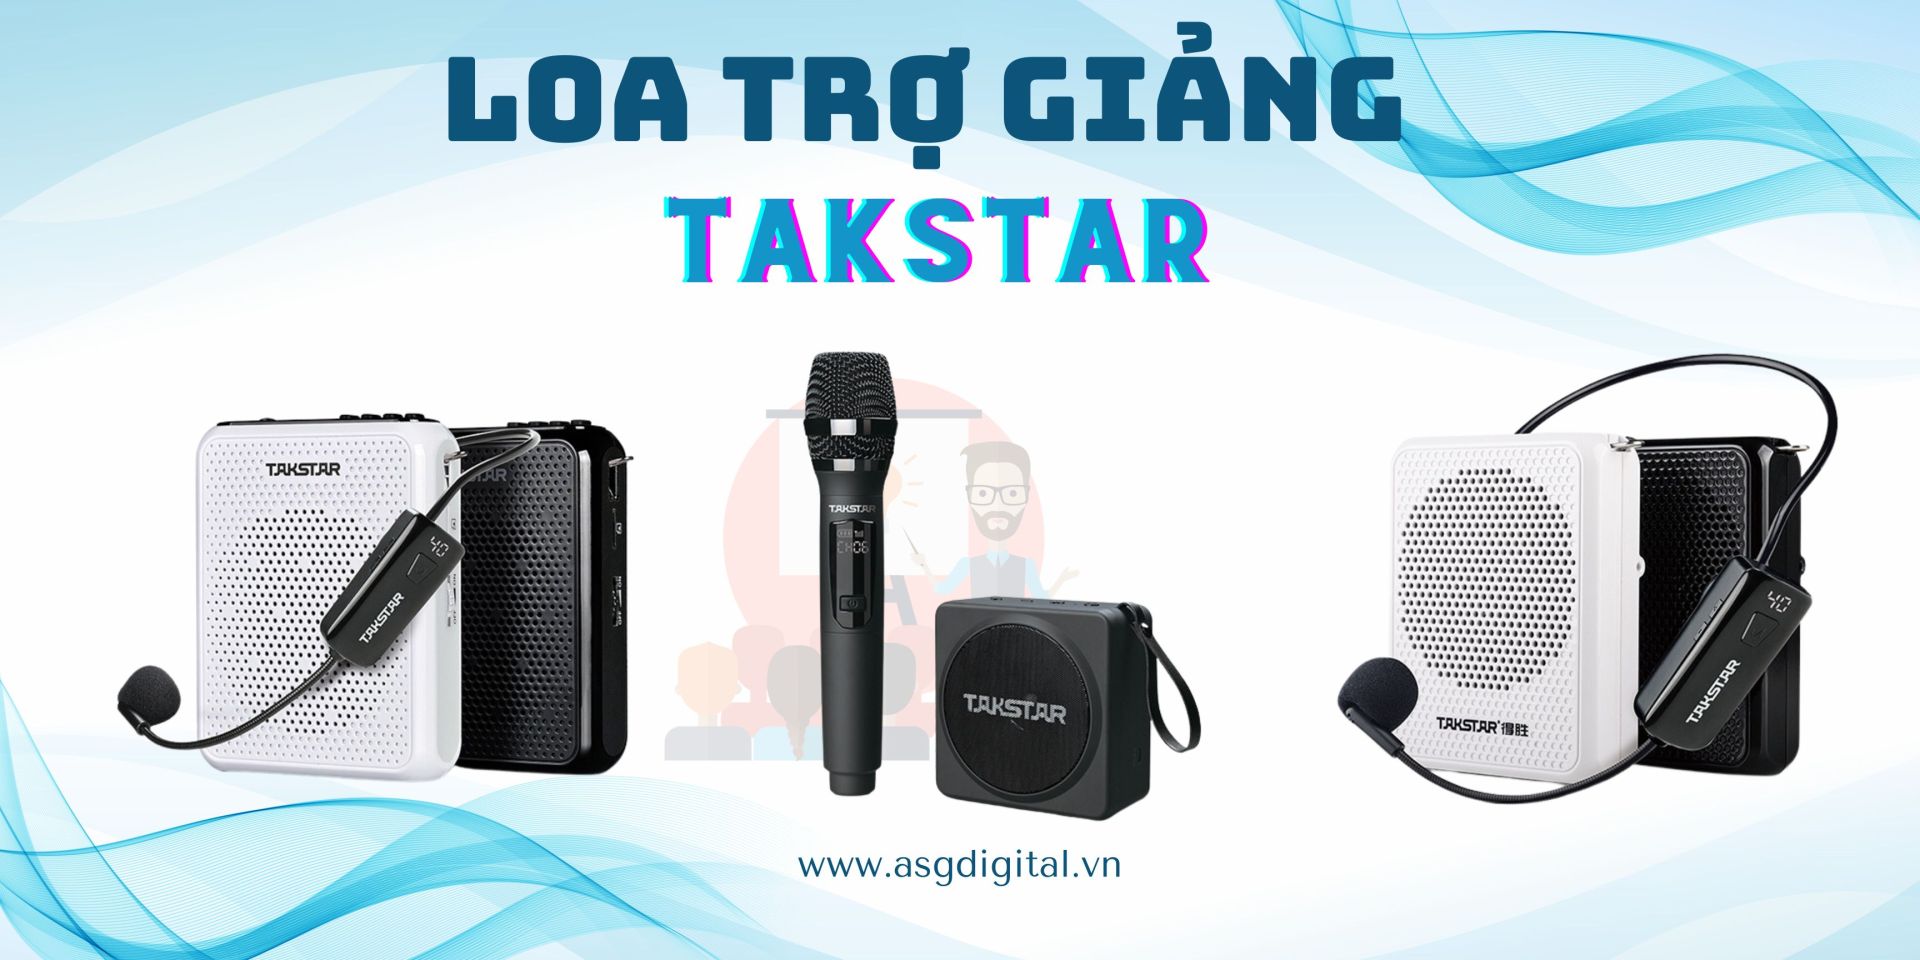 Takstar - Loa trợ giảng chất lượng cao